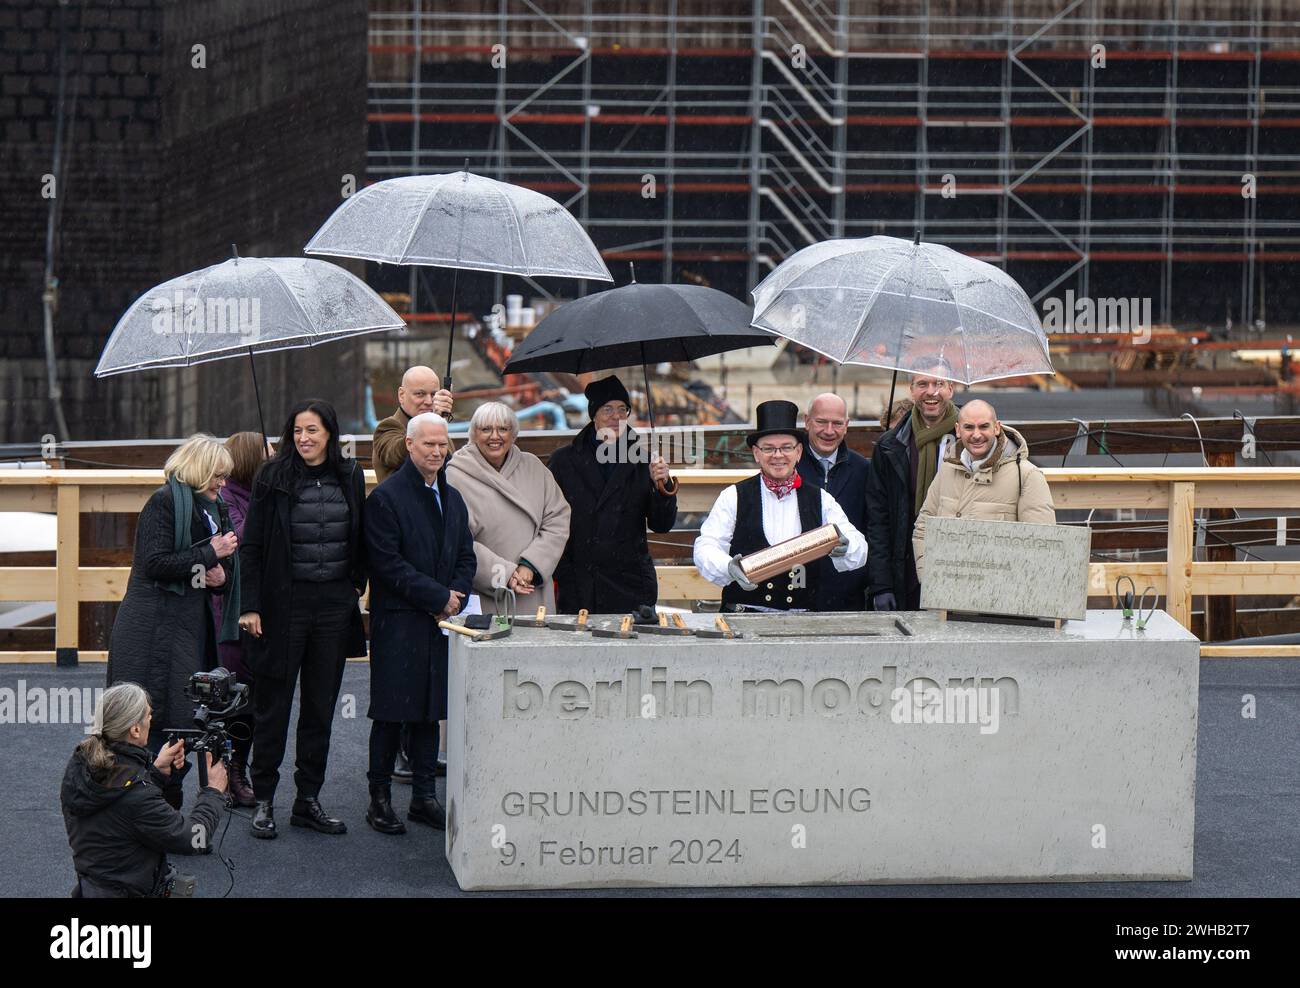 09 février 2024, Berlin : Klaus Biesenbach (devant, 3e à gauche), directeur de la Neue Nationalgalerie, Claudia Roth (devant, 4e à gauche, Bündnis 90/Die Grünen), ministre d’État à la culture et aux médias, Jacques Herzog (5e à gauche), architecte, Kai Wegner (deuxième rangée, 3e à droite, CDU), maire de Berlin, et d'autres participants au projet se tiennent sur le site de construction du musée lors d'une séance photo pour marquer la pose de la première pierre du nouveau musée moderne de berlin. La Maison de l'art du XXe siècle est en construction au Kulturforum selon les plans des architectes suisses Herz Banque D'Images